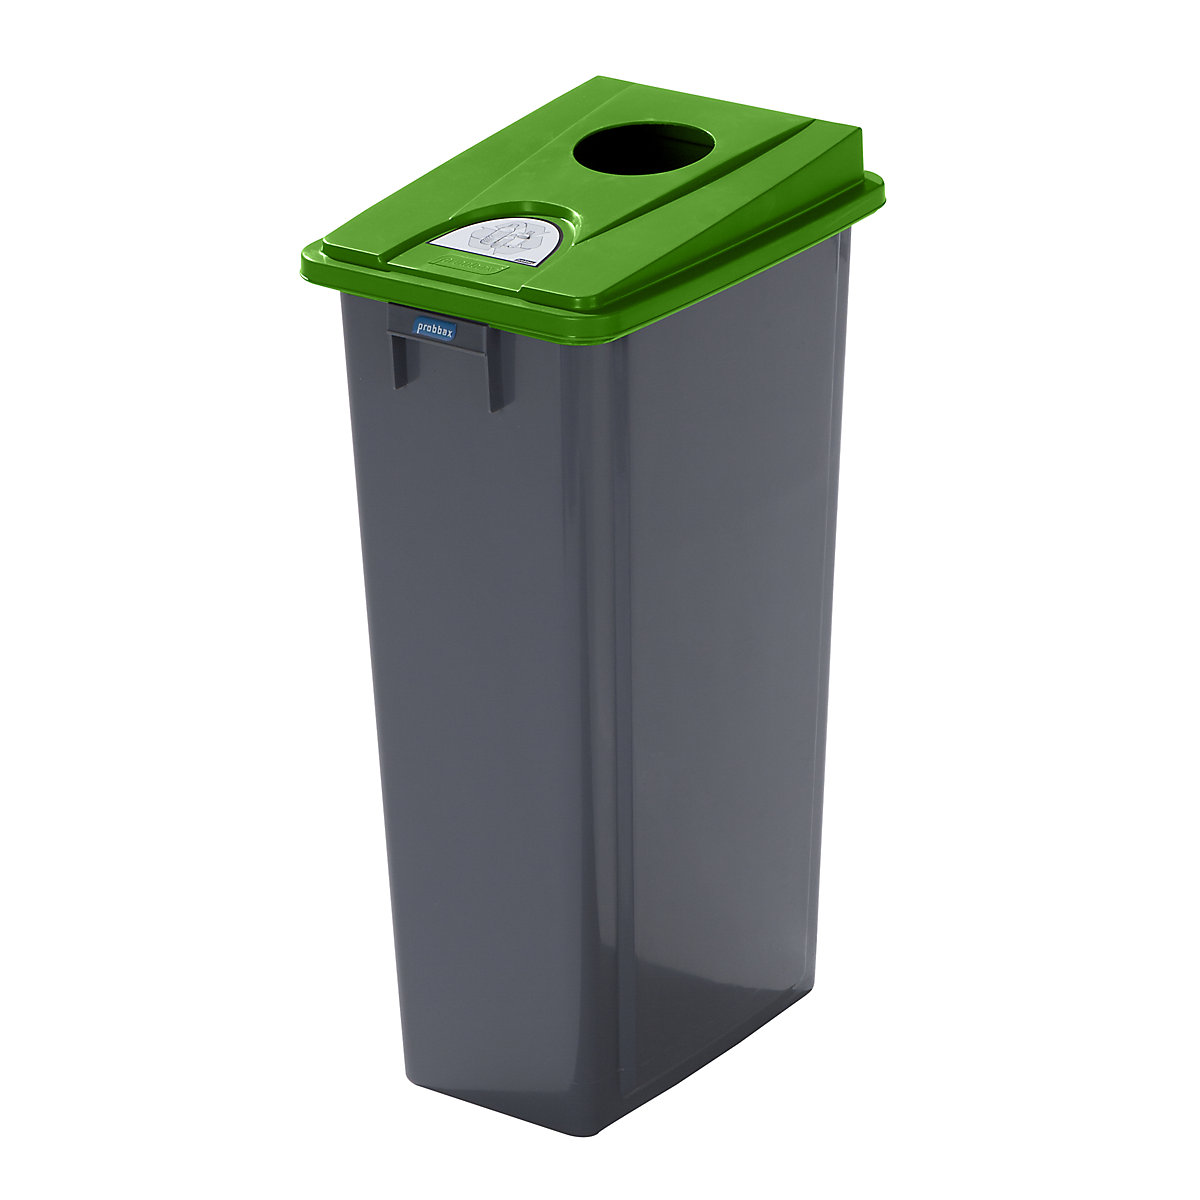 Coletor de materiais recicláveis robusto com tampa, volume 80 l, tampa plana, abertura de inserção-4